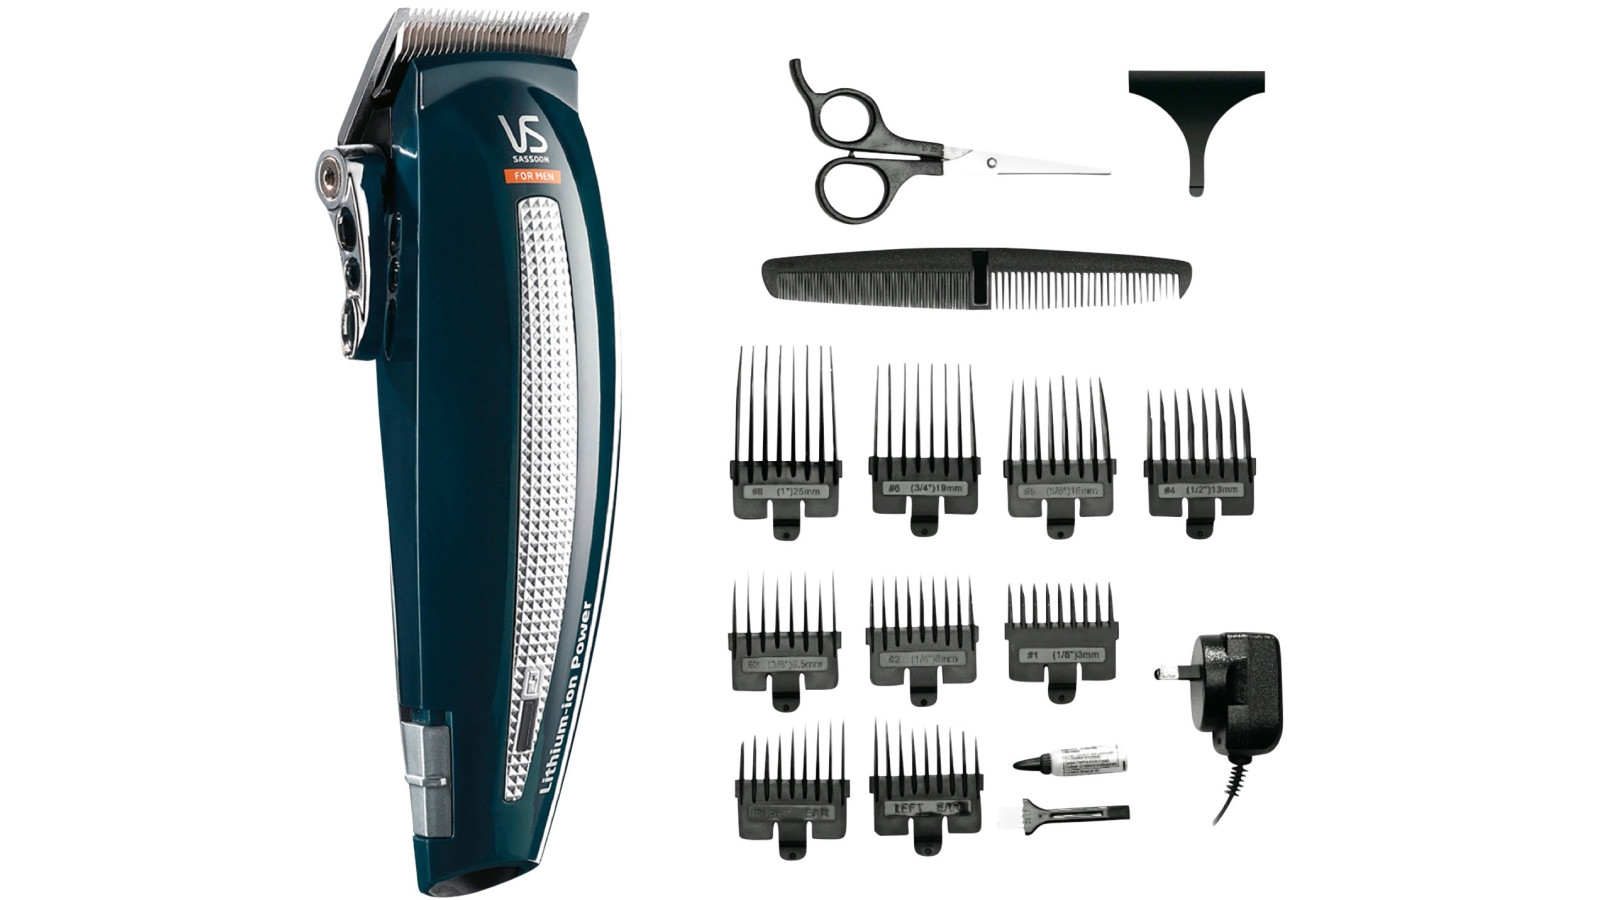 hair trimmer kit for men